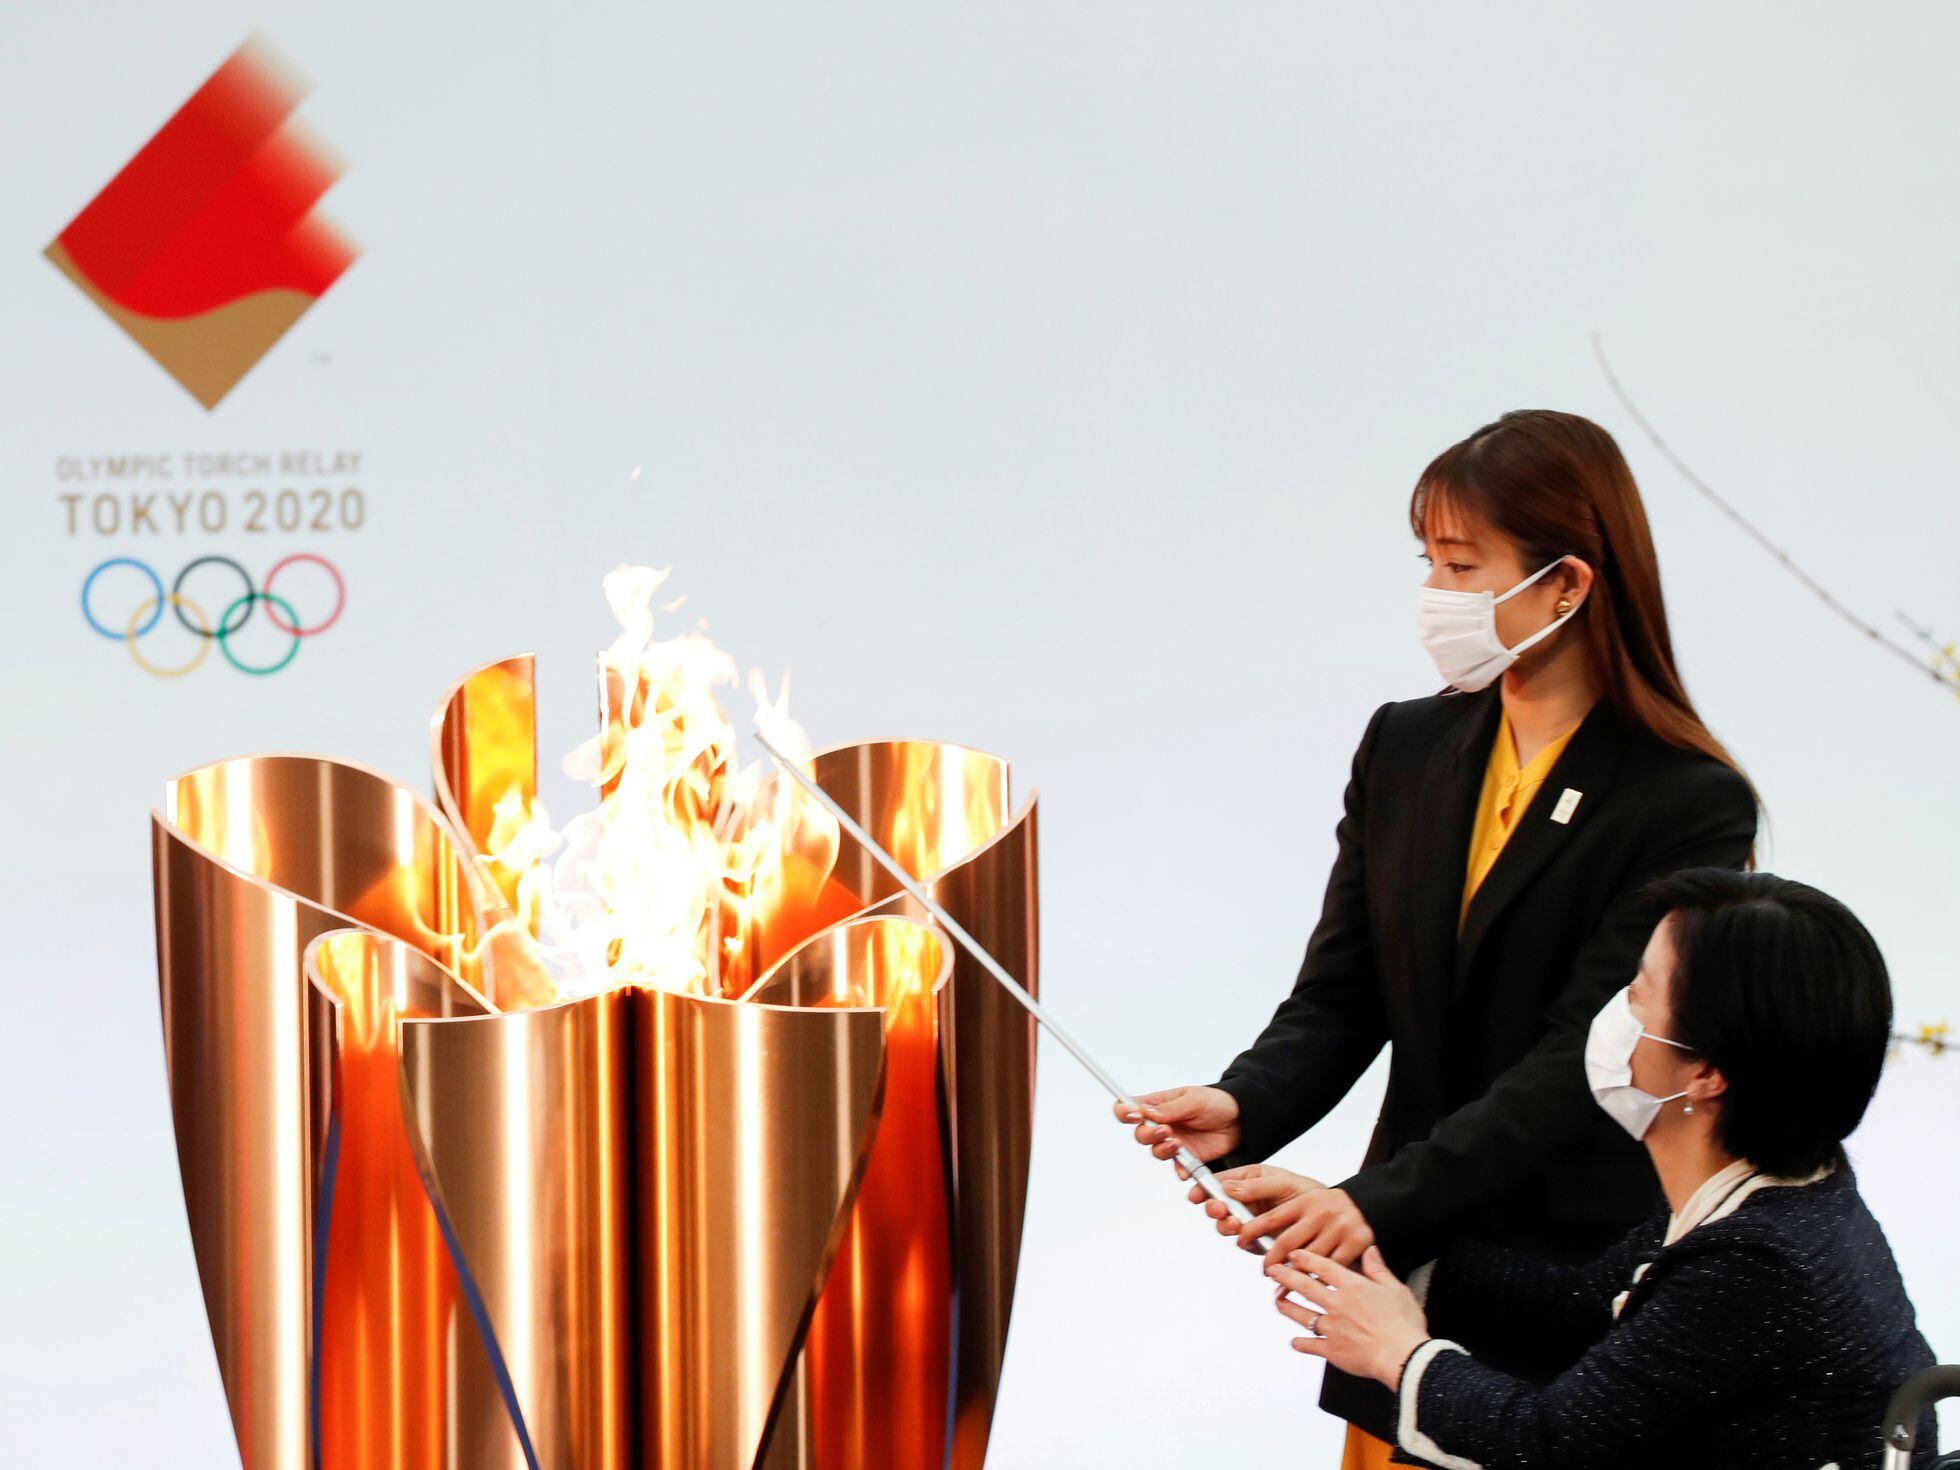 Em clima de Olimpíadas, Google lança um doodle inspirado na cultura japonesa